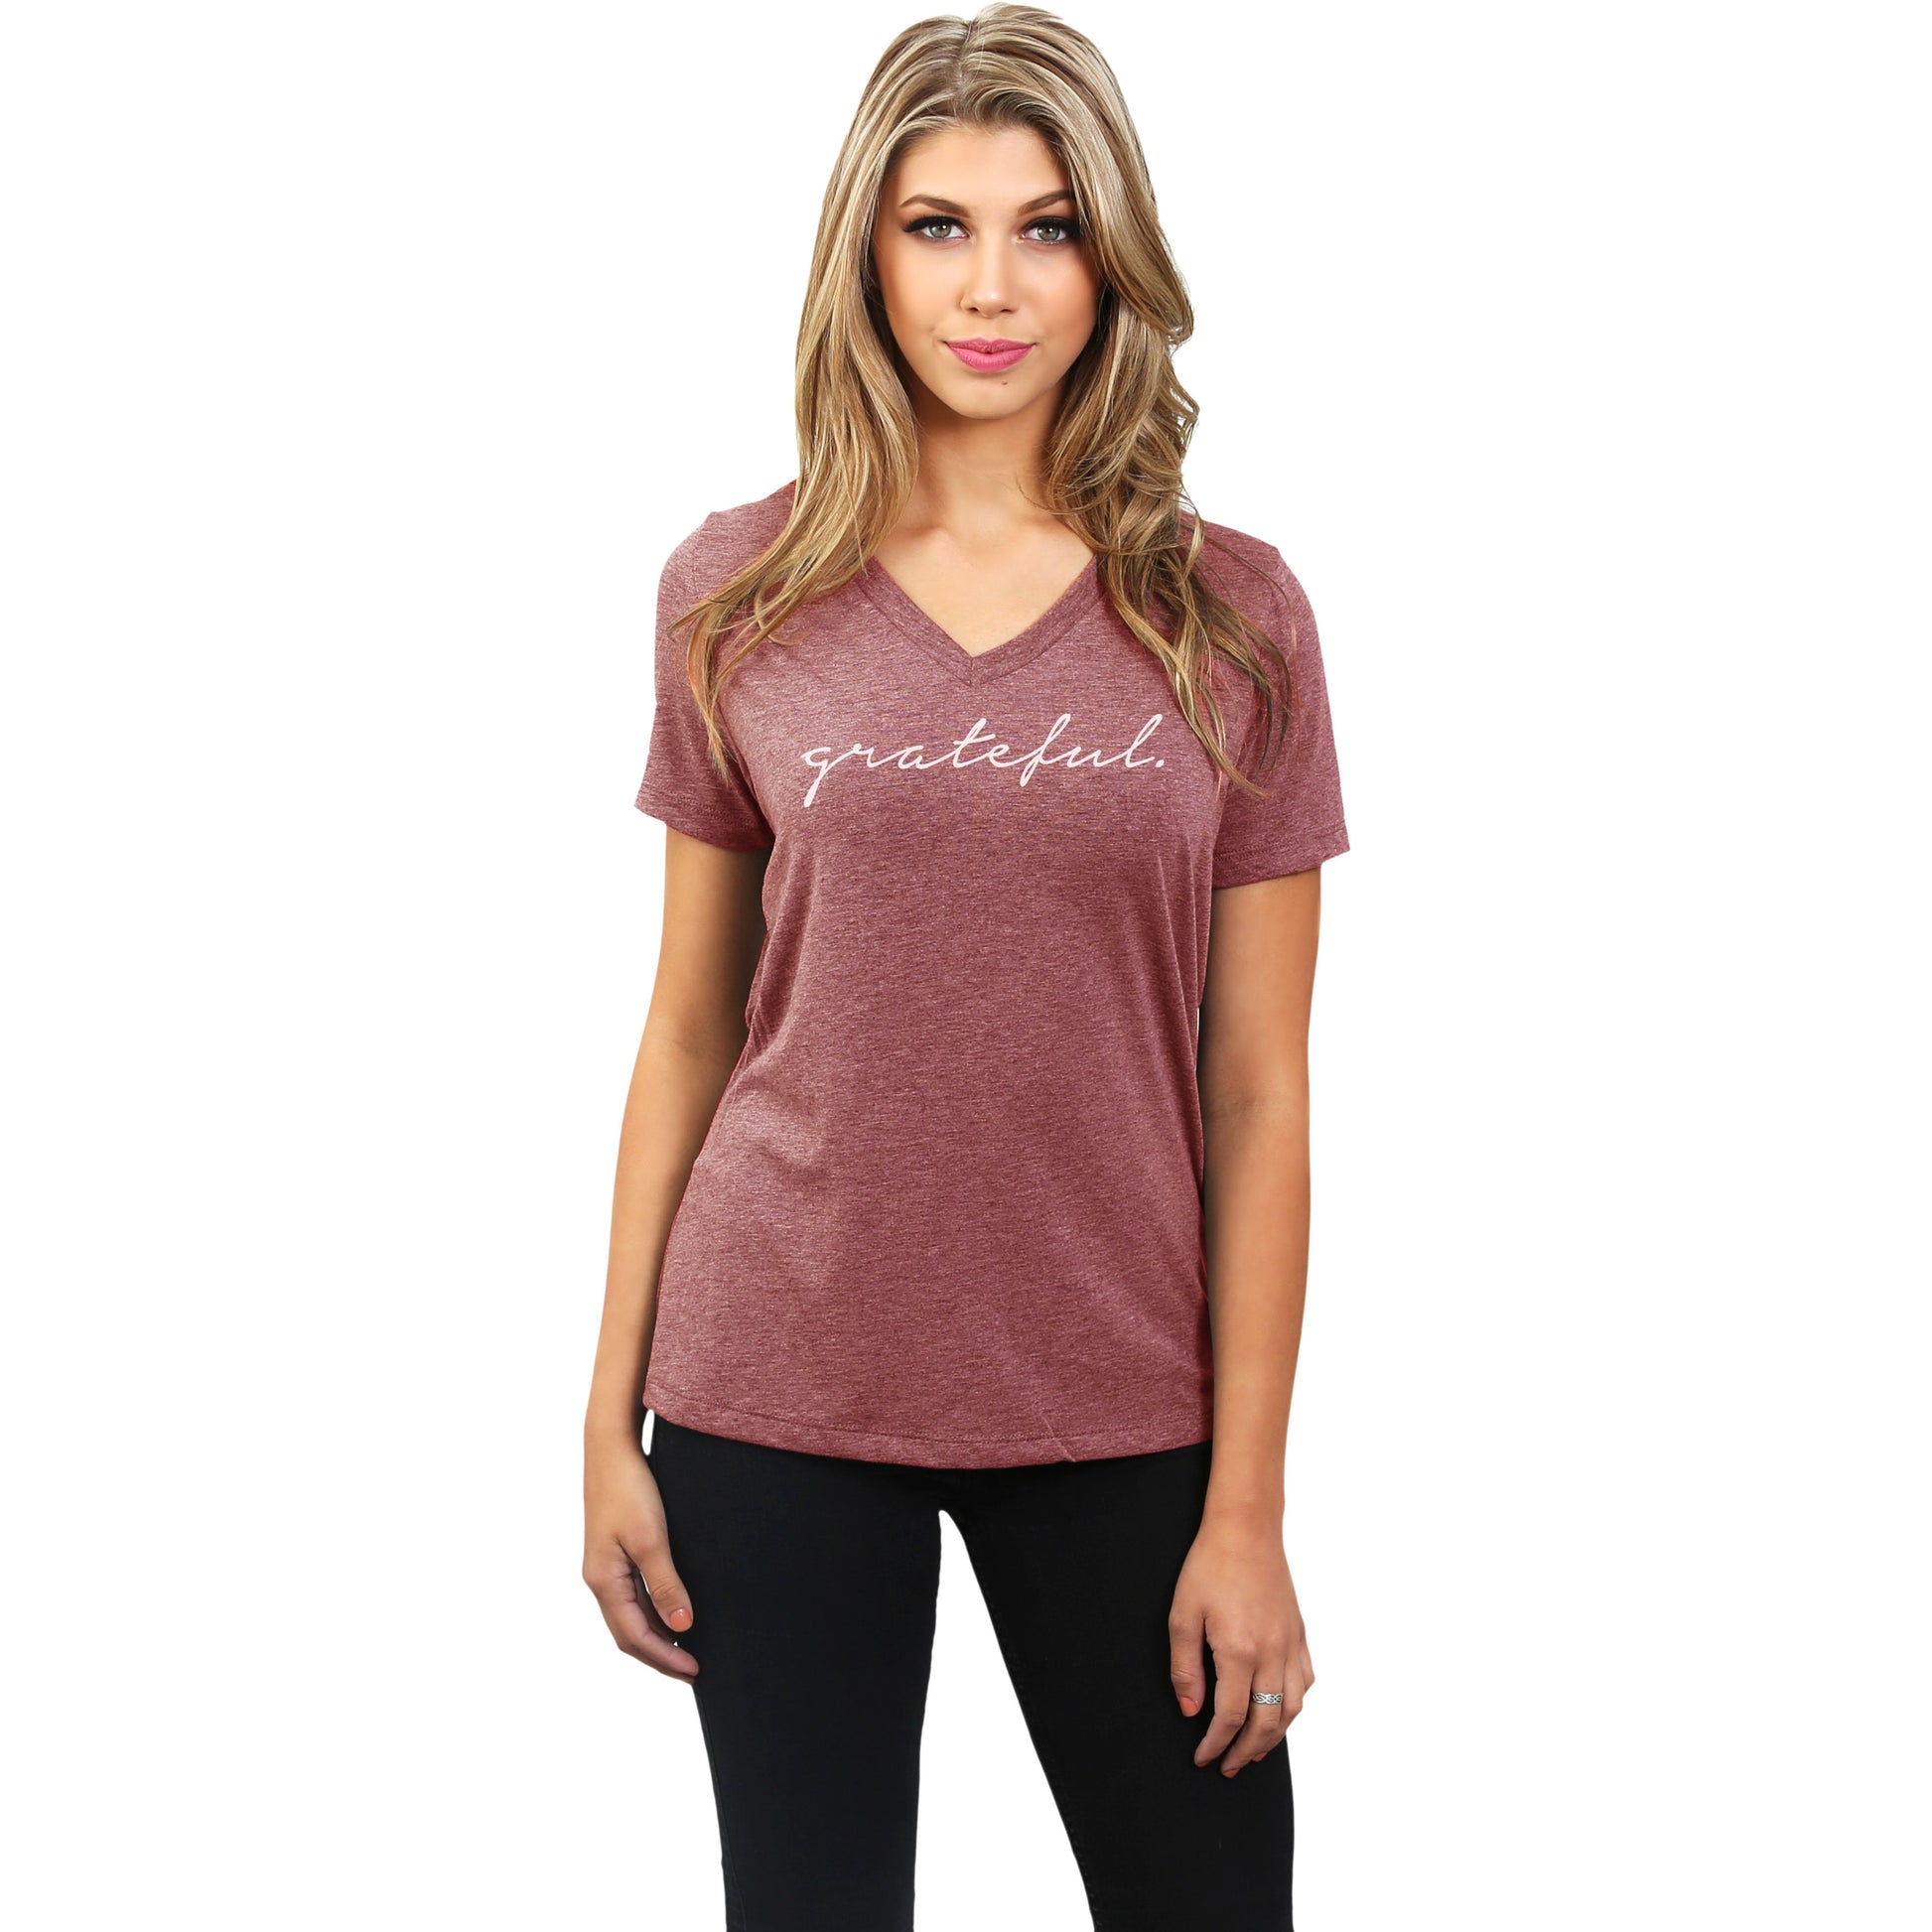 Grateful Women's Relaxed V-Neck T-Shirt Tee Heather Black Model
